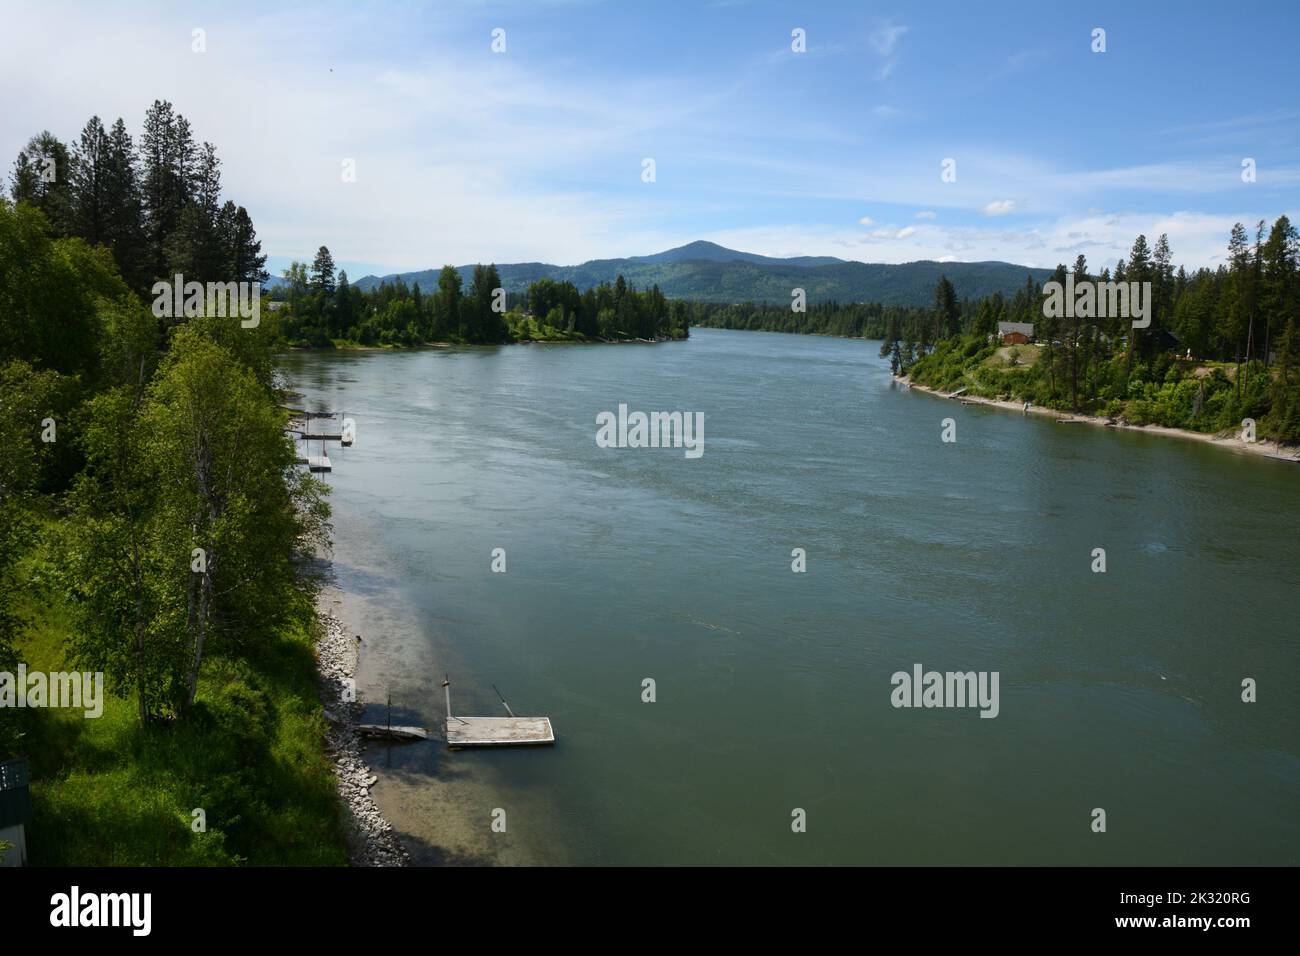 La rivière Pend-oreille, un affluent du Columbia, traversant la forêt nationale de Colville près d'Ione, dans le nord-est de l'État de Washington, aux États-Unis. Banque D'Images